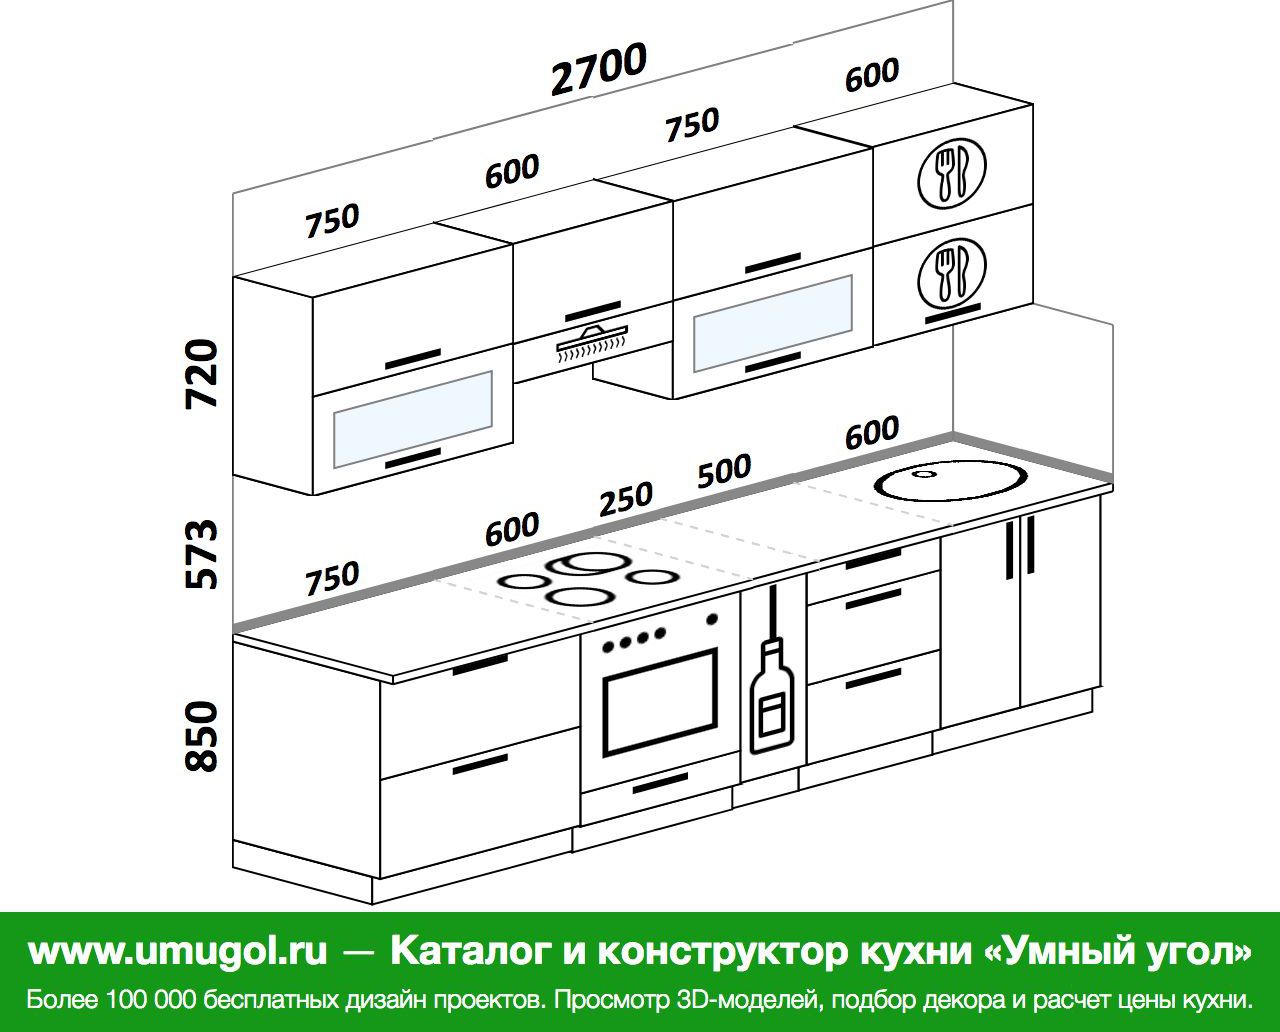 Дизайн кухни длиной 4 метра с холодильником прямой